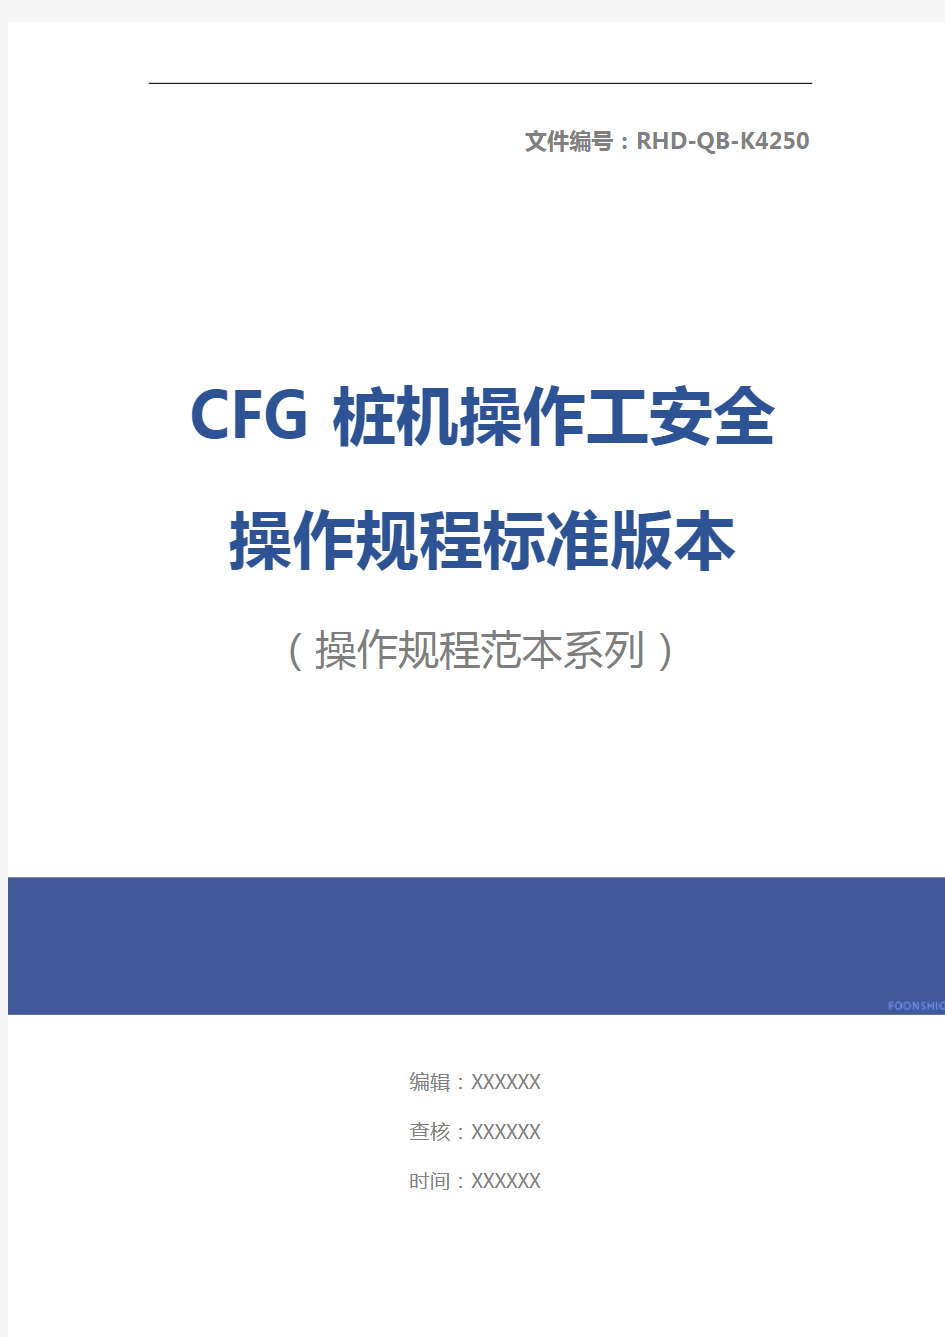 CFG桩机操作工安全操作规程标准版本